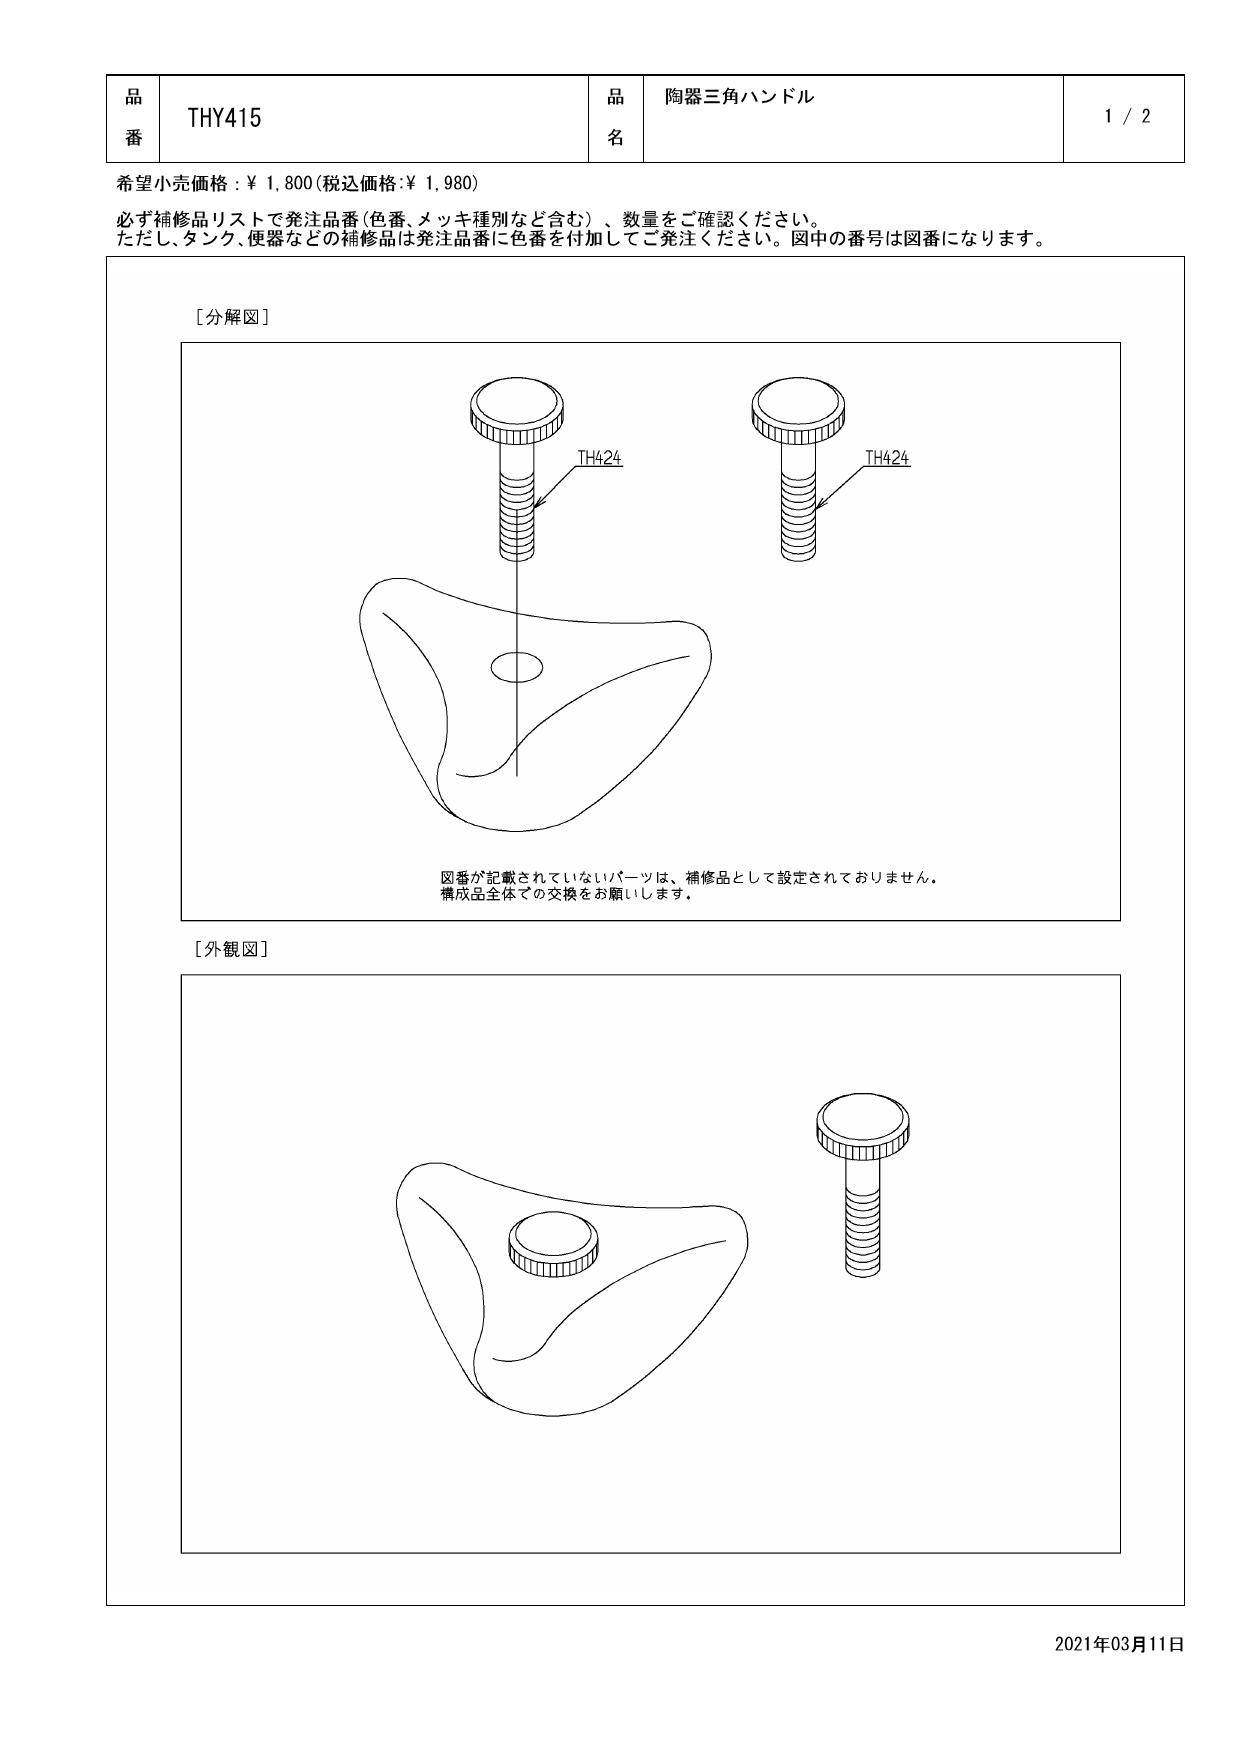 日本メーカー新品 TOTO 陶器三角ハンドル THY415 mc-taichi.com